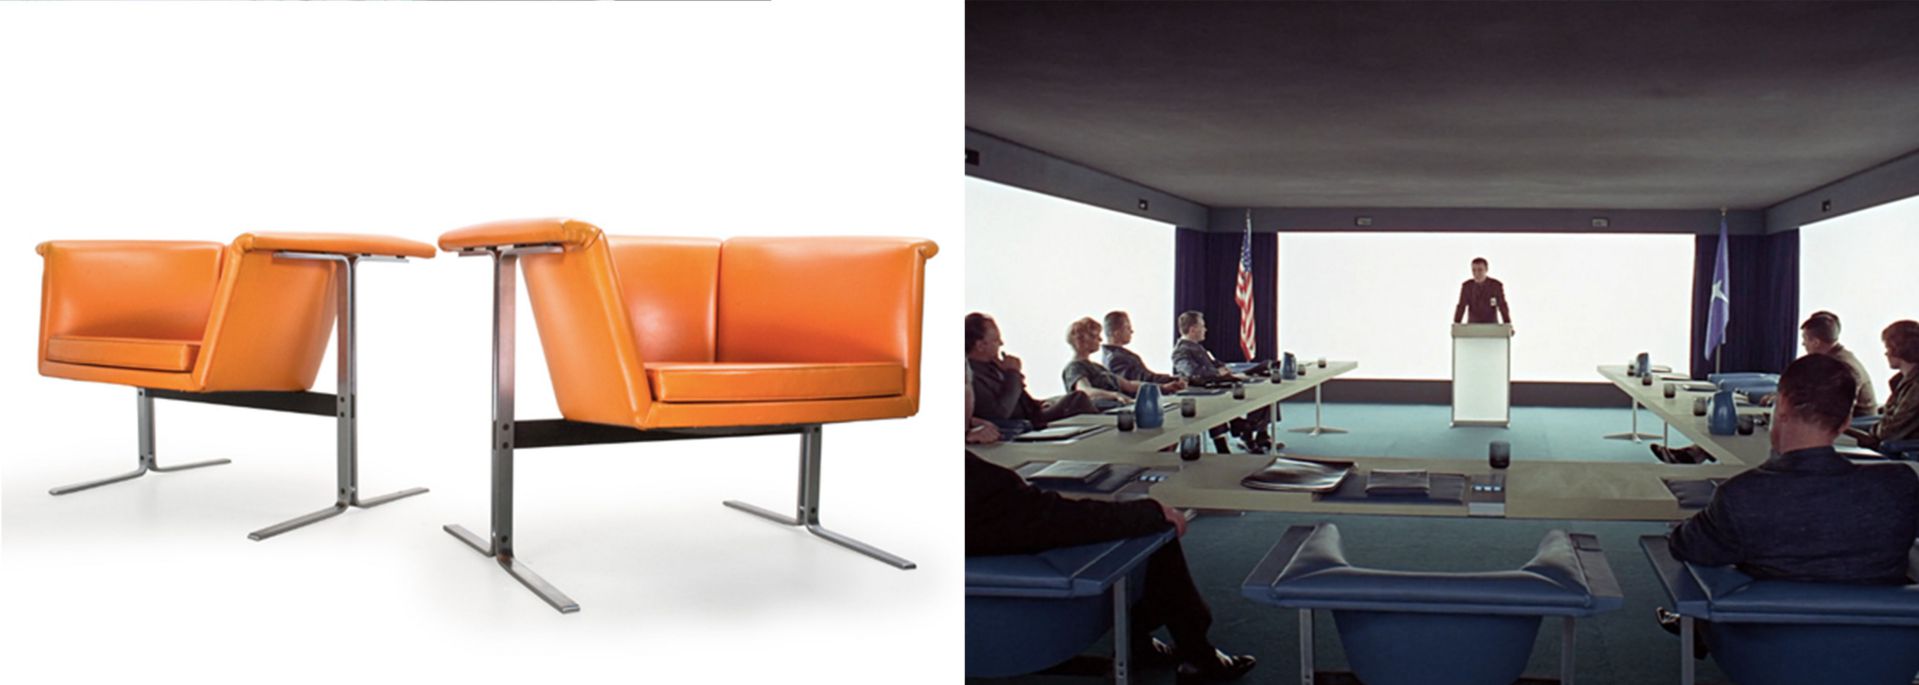 2001-yapim-tasarimi-geoffrey-harcourt-model-042-lounge-sandalye.jpg